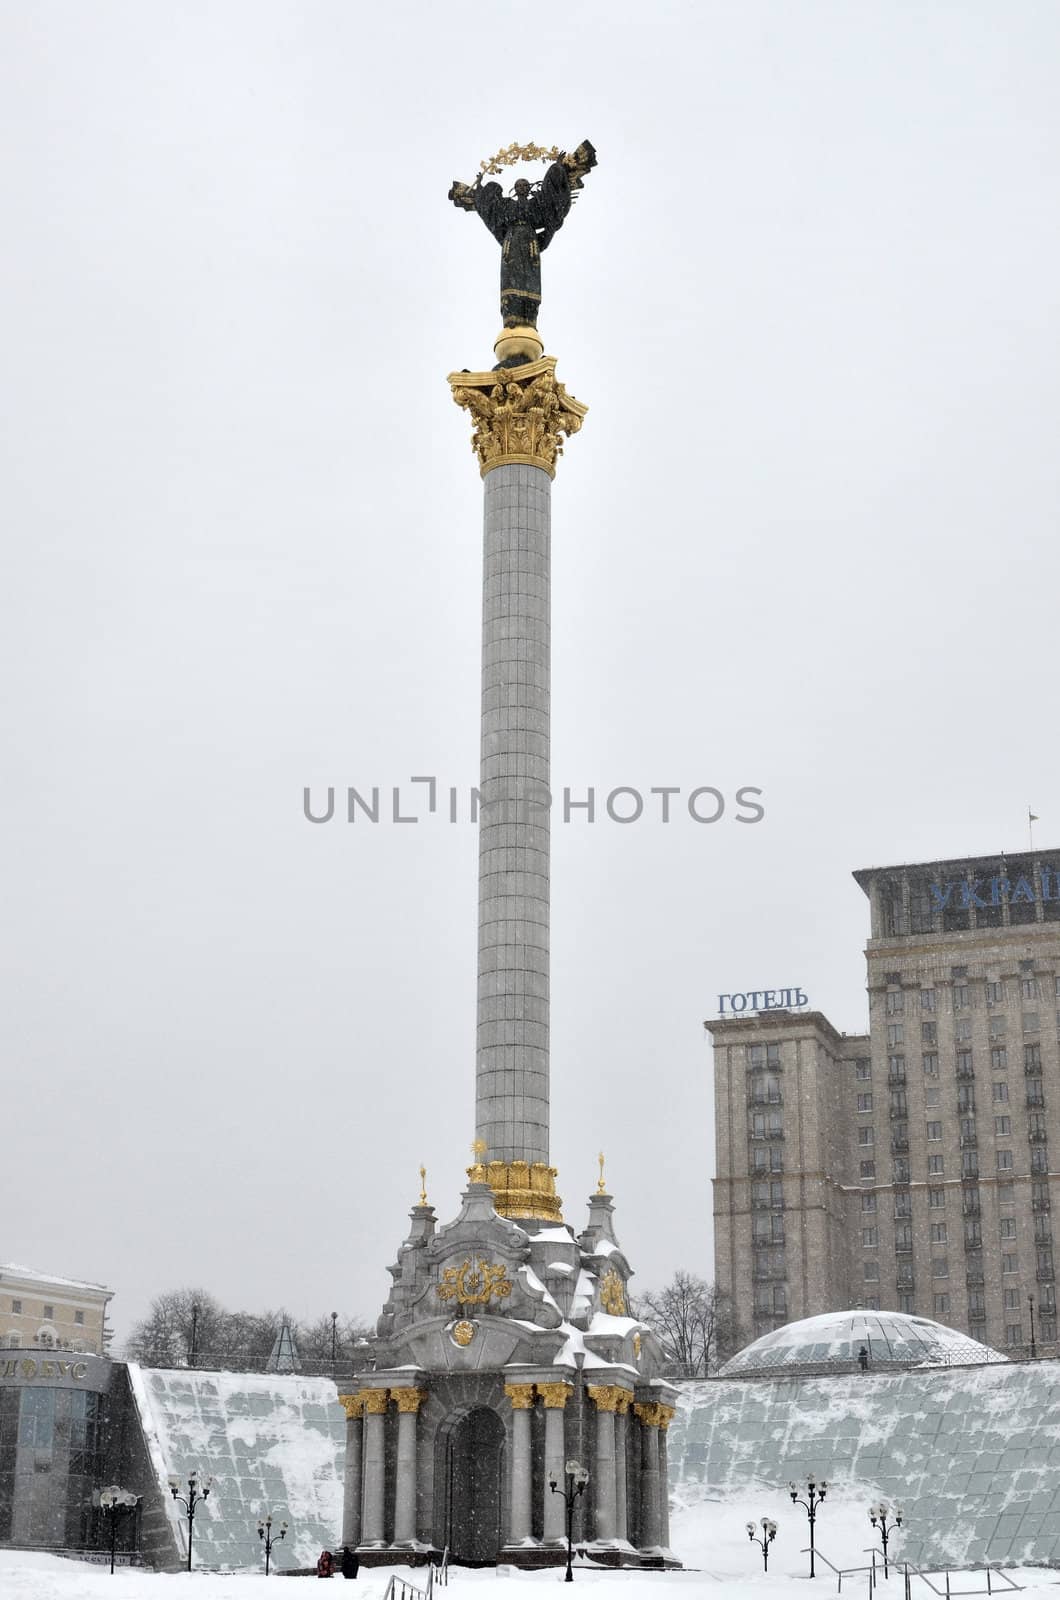 Kiev in the winter by DNKSTUDIO